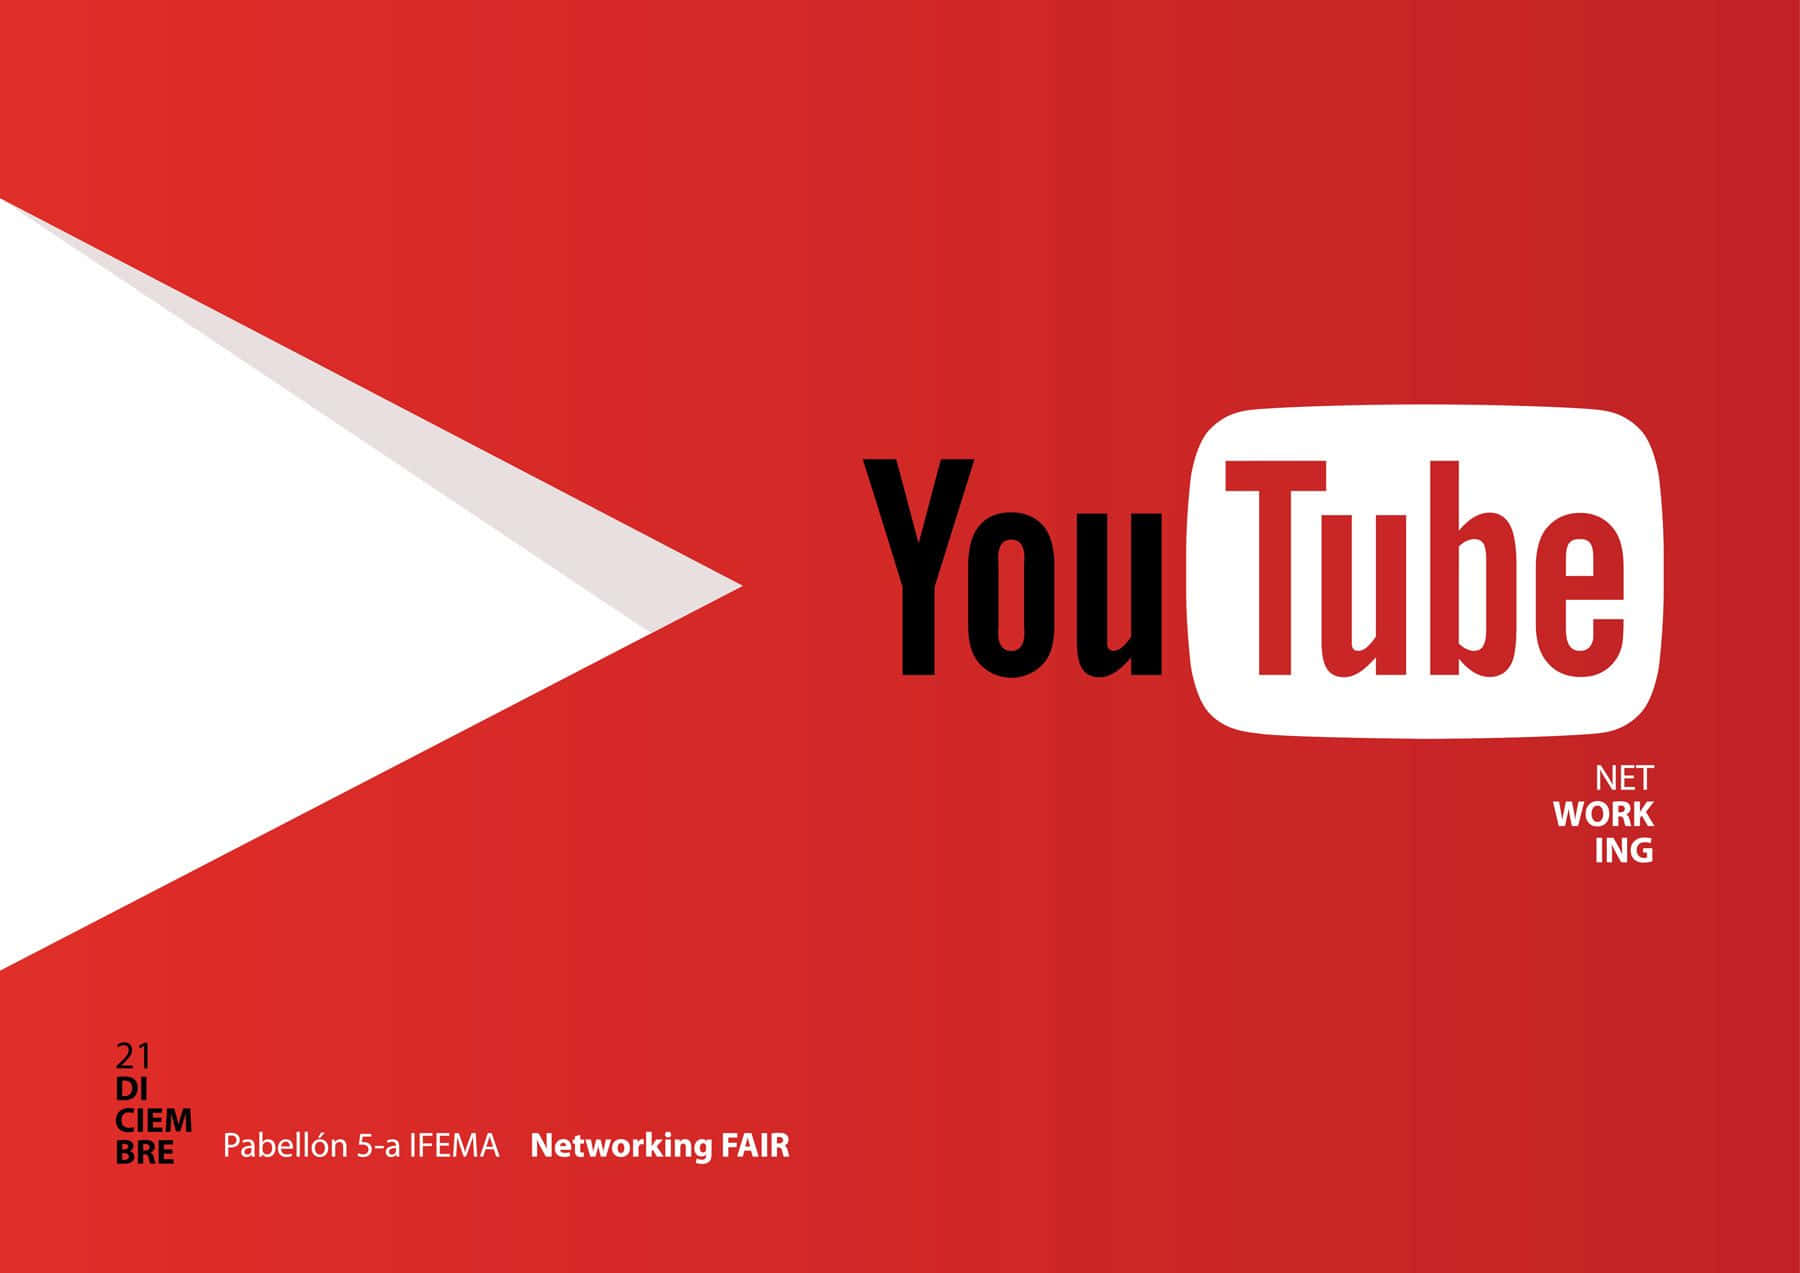 Logotipode Youtube En Fondo Negro